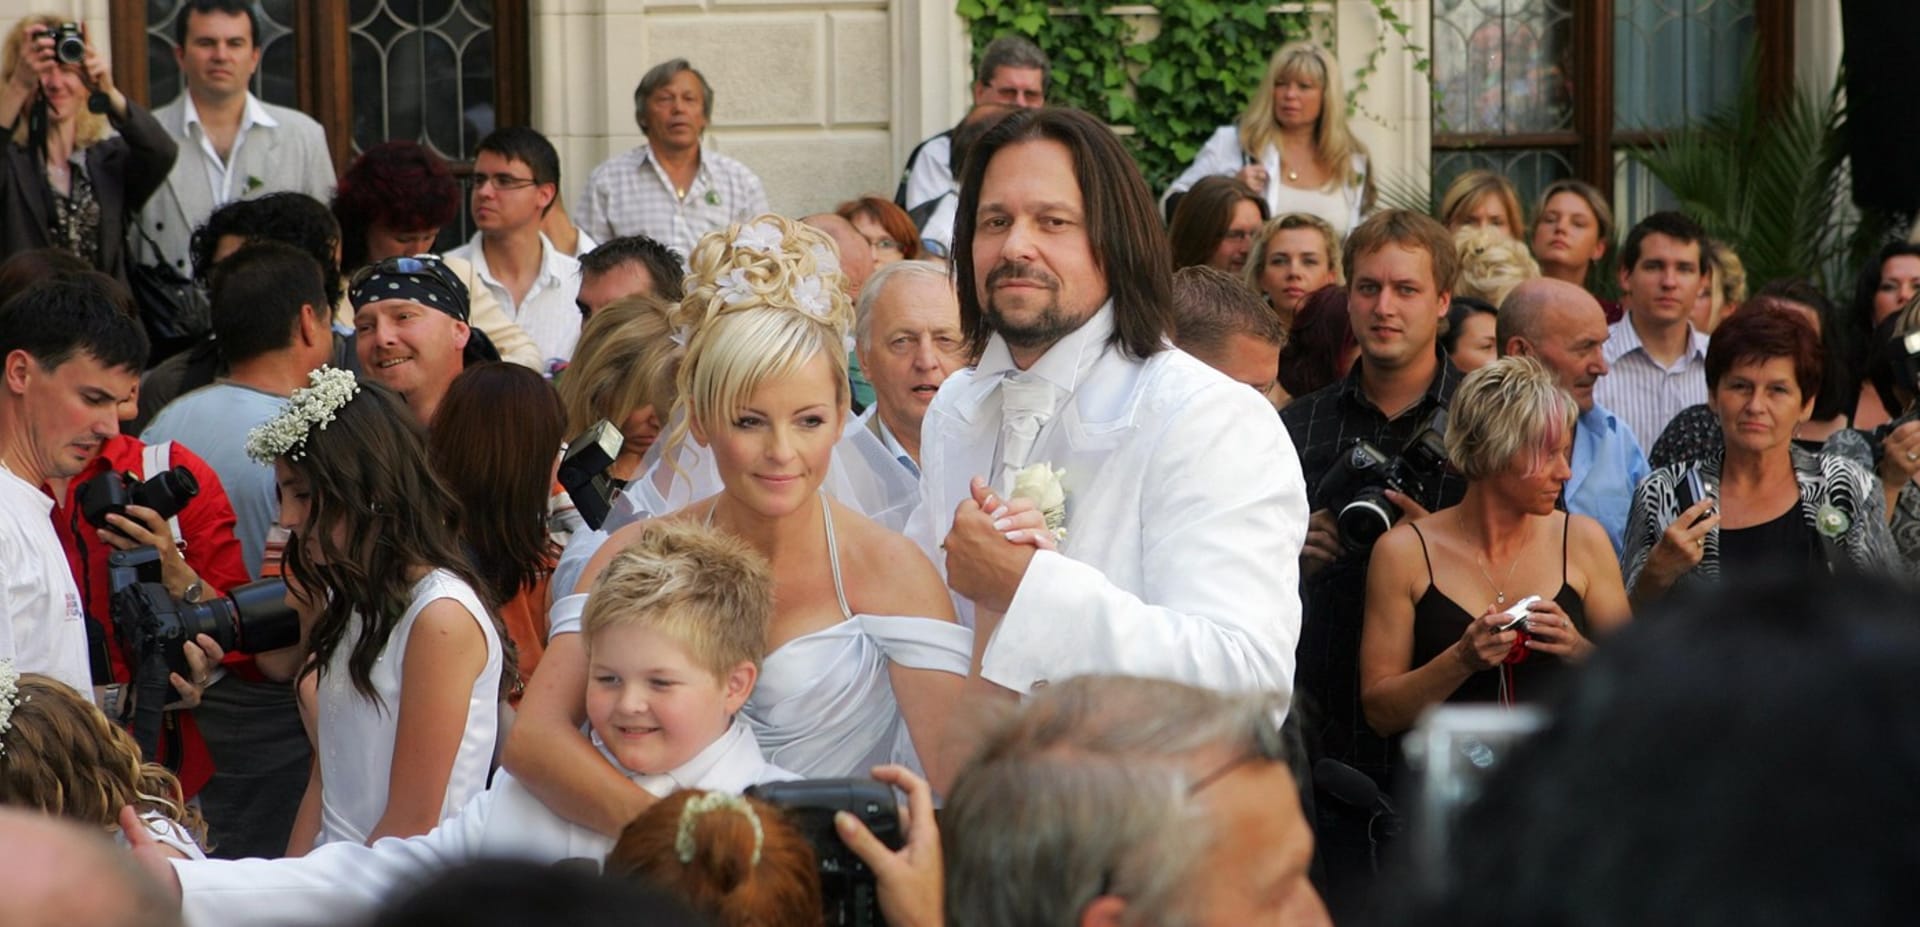 Svatba Ivety Bartošové a Jiřího Pomeje (snímek z roku 2008)